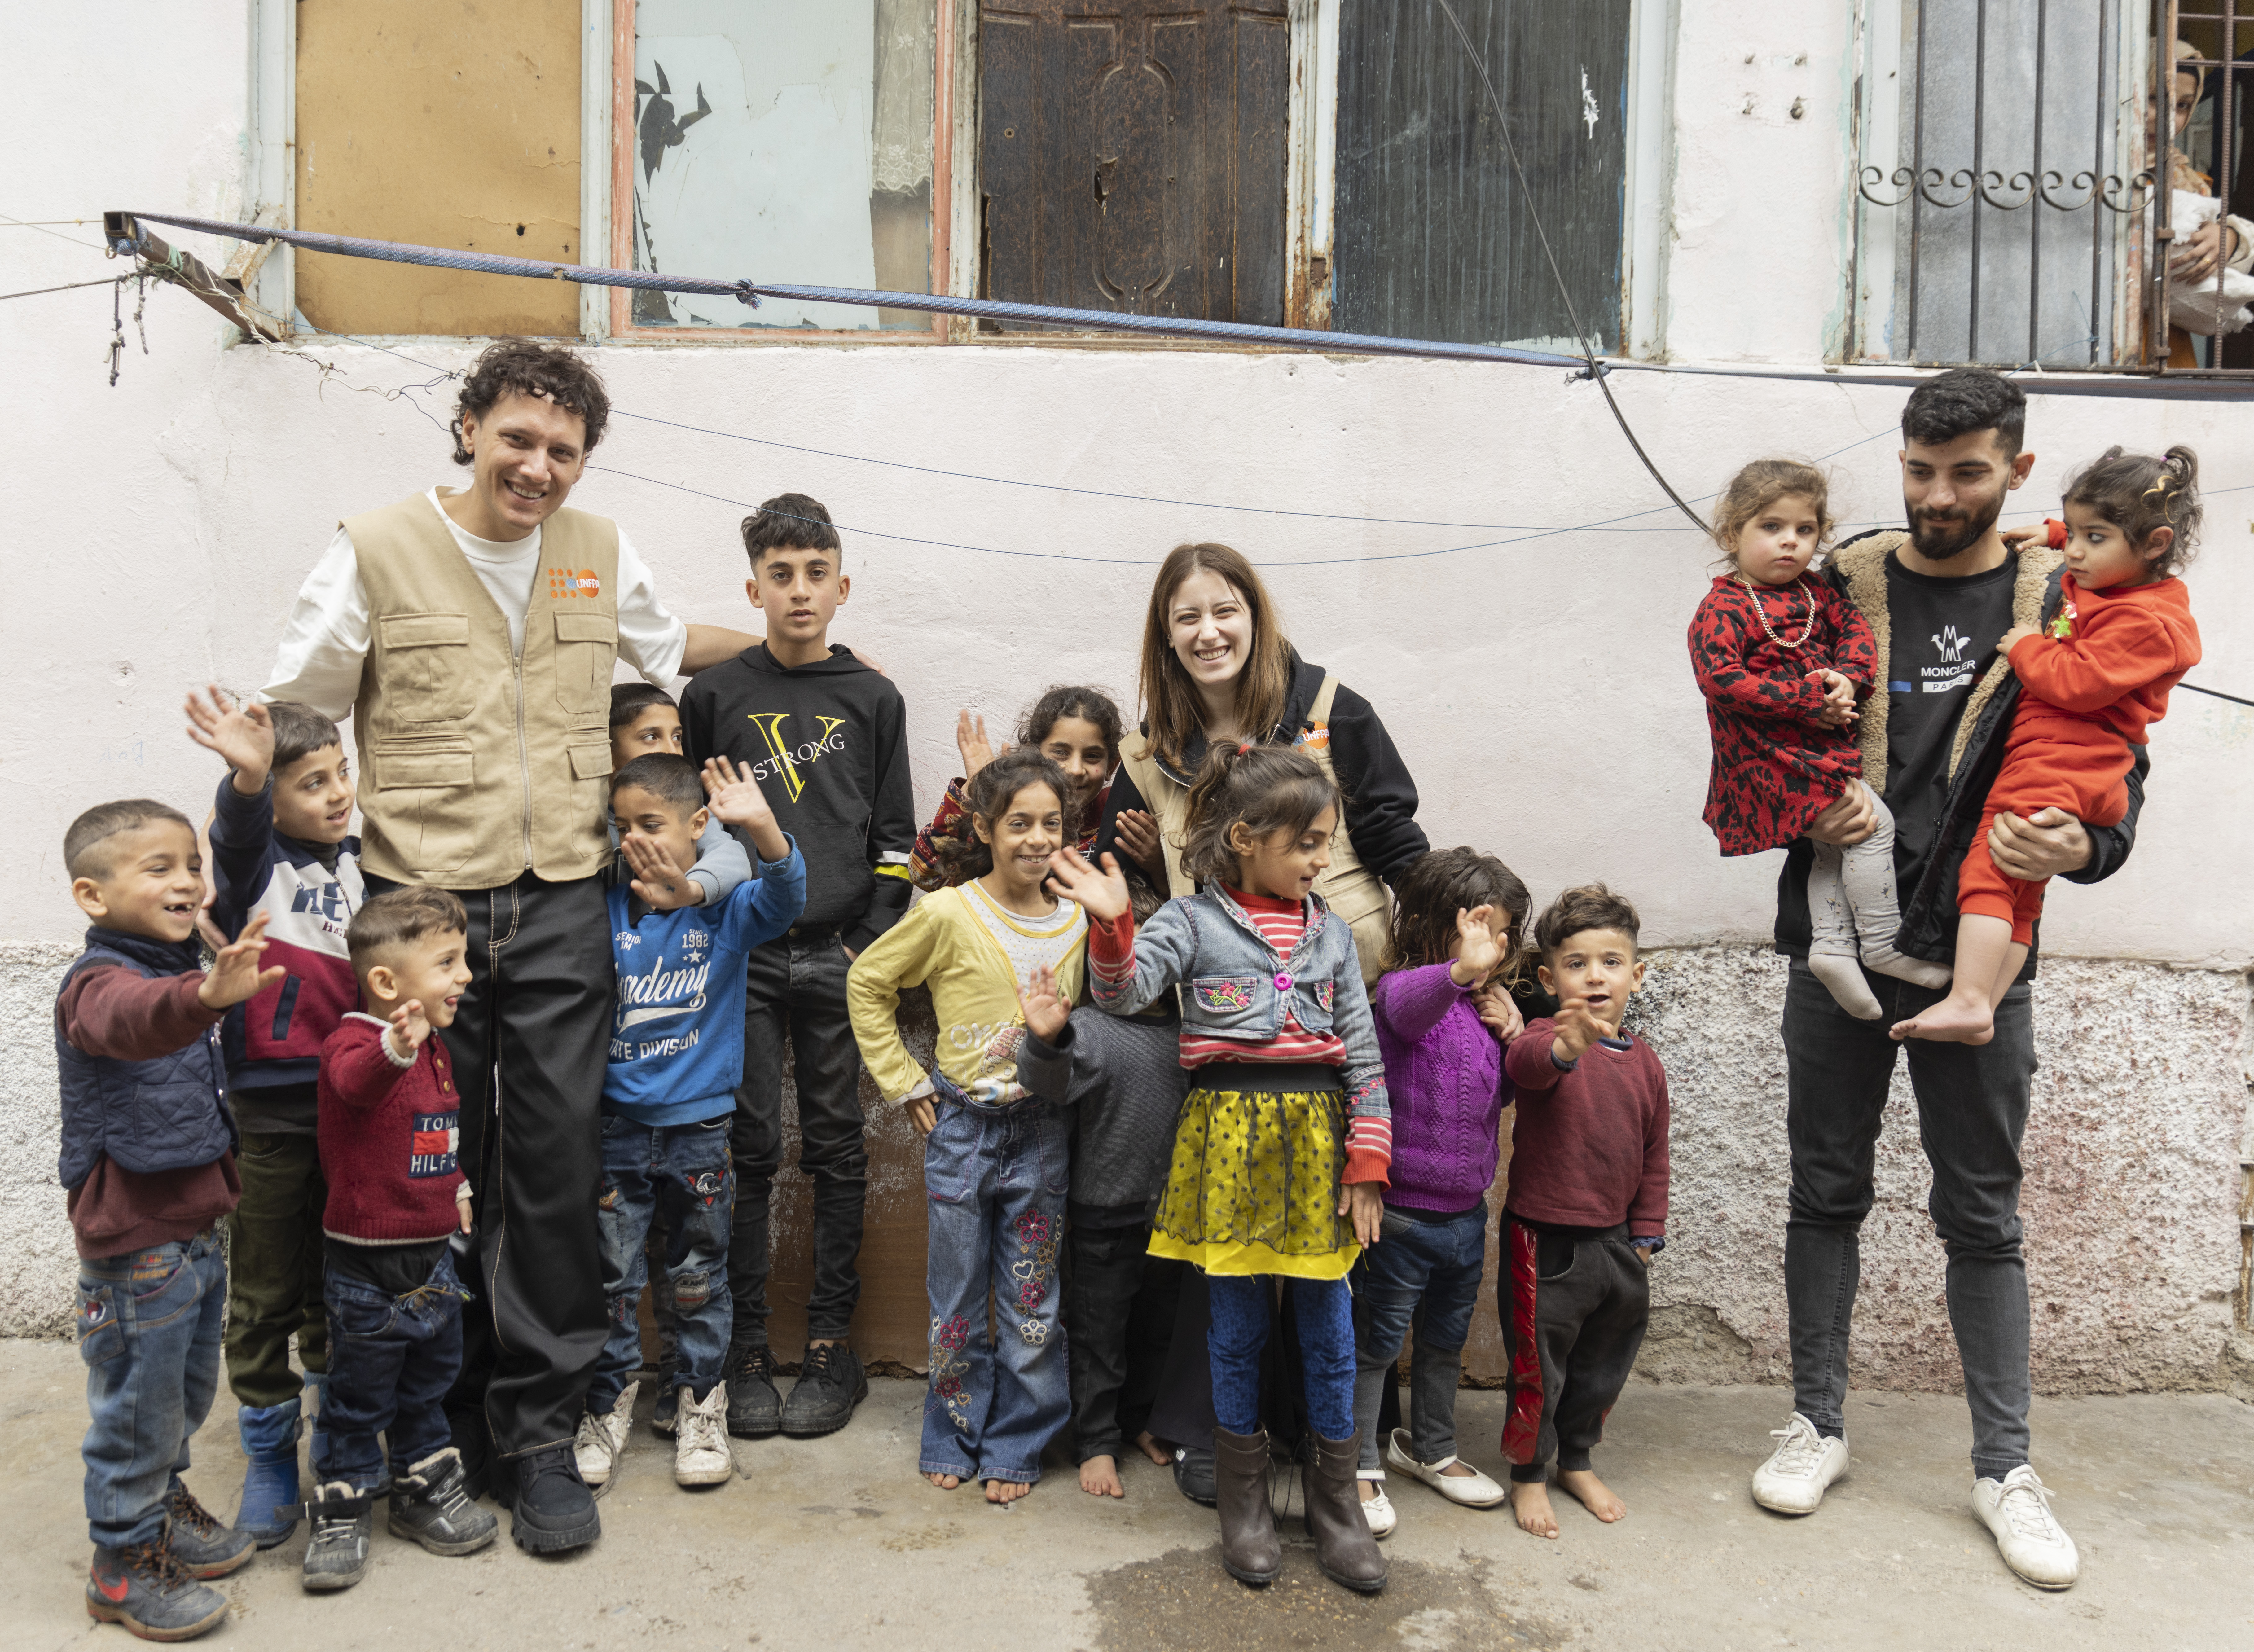 UNFPA Türkiye İyi niyet elçileri Hazal Kaya ve Edis, Kahramanmaraş’taki depremzede aileleri ziyaret ediyor, kalabalık bir çocuk grubuyla birlikte açık alanda poz veriyorlar. 